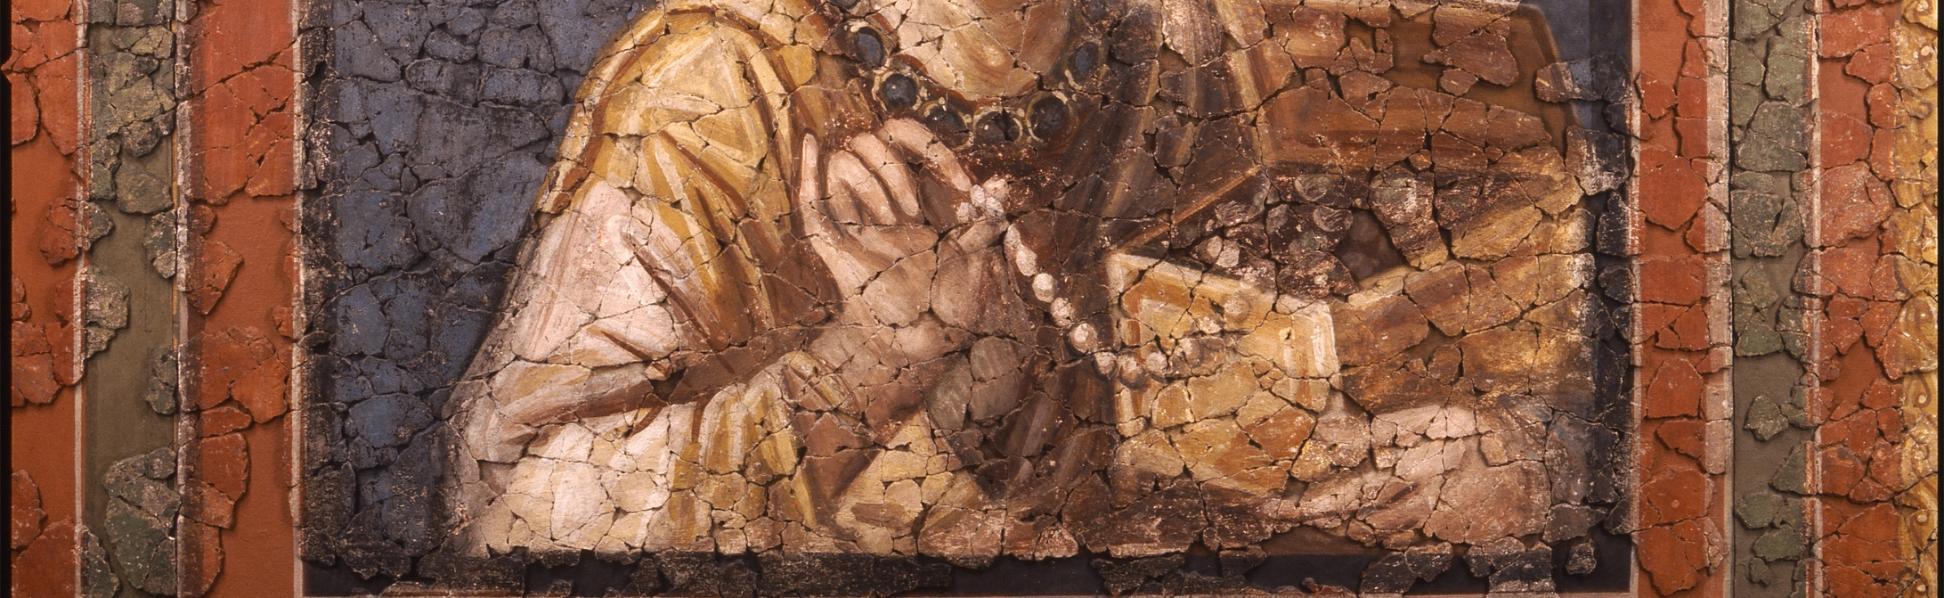 Man sieht ein Gemälde in Brauntönen mit einer Frau, die eine offene Schatulle im Arm hält und in der Hand eine Perlenkette.